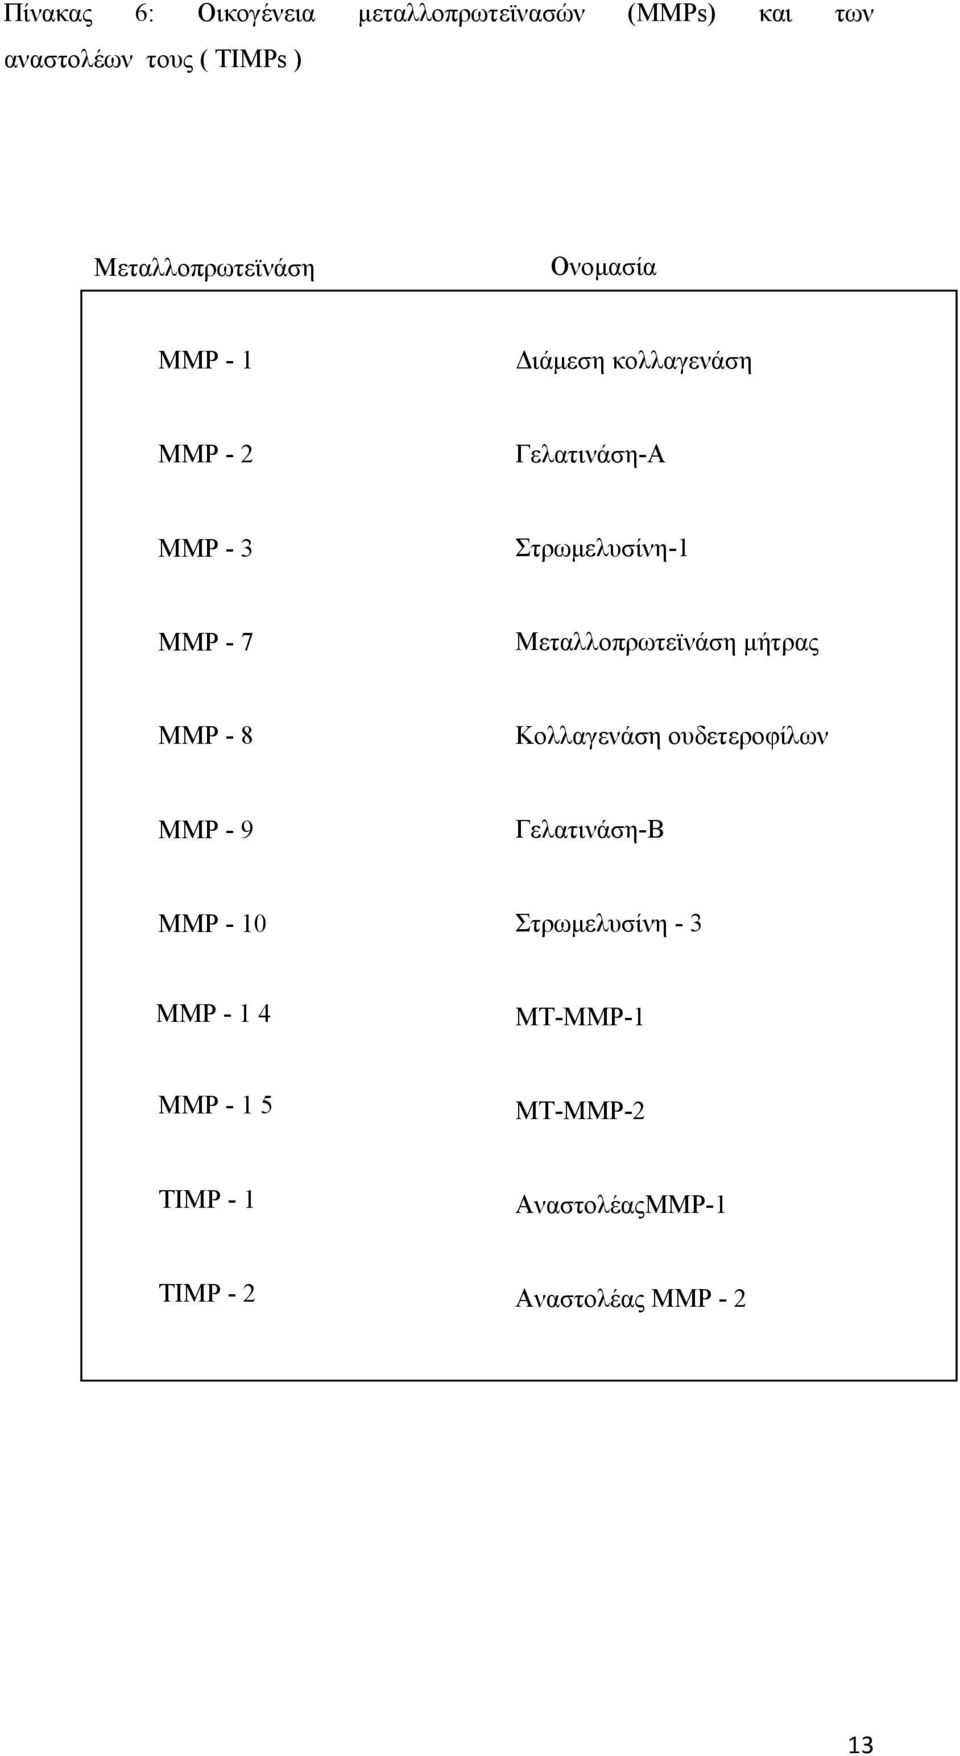 Στρωμελυσίνη-1 MMP - 7 Μεταλλοπρωτεϊνάση μήτρας MMP - 8 Κολλαγενάση ουδετεροφίλων MMP - 9